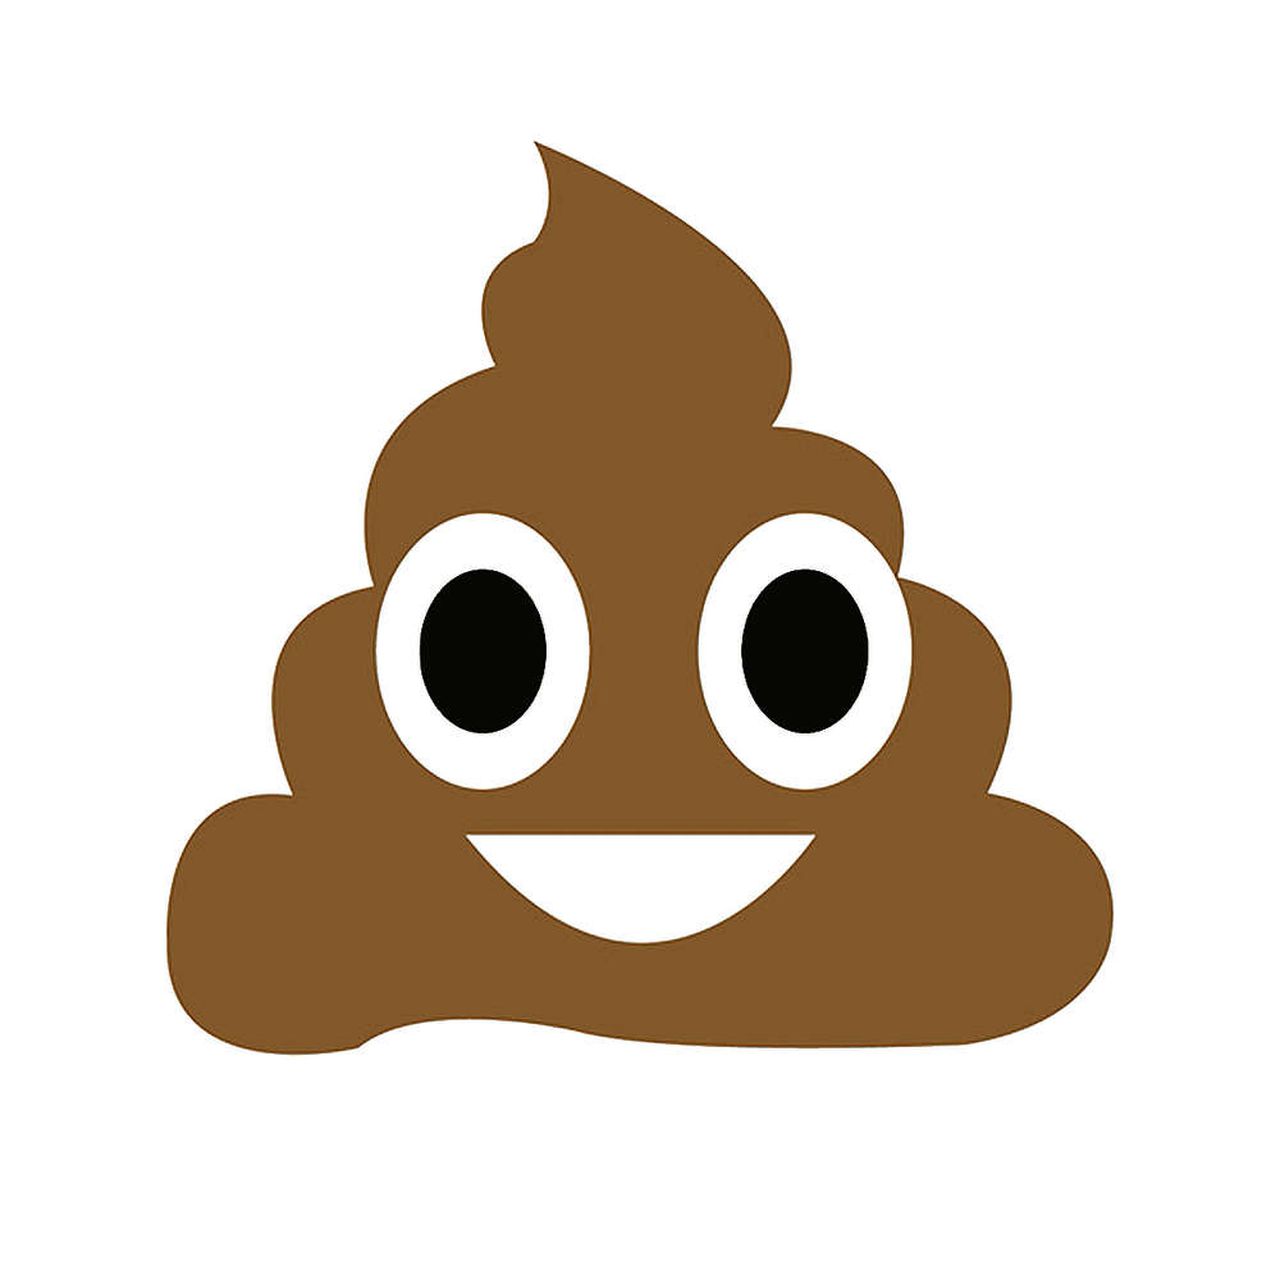 poop emoji clipart - photo #7